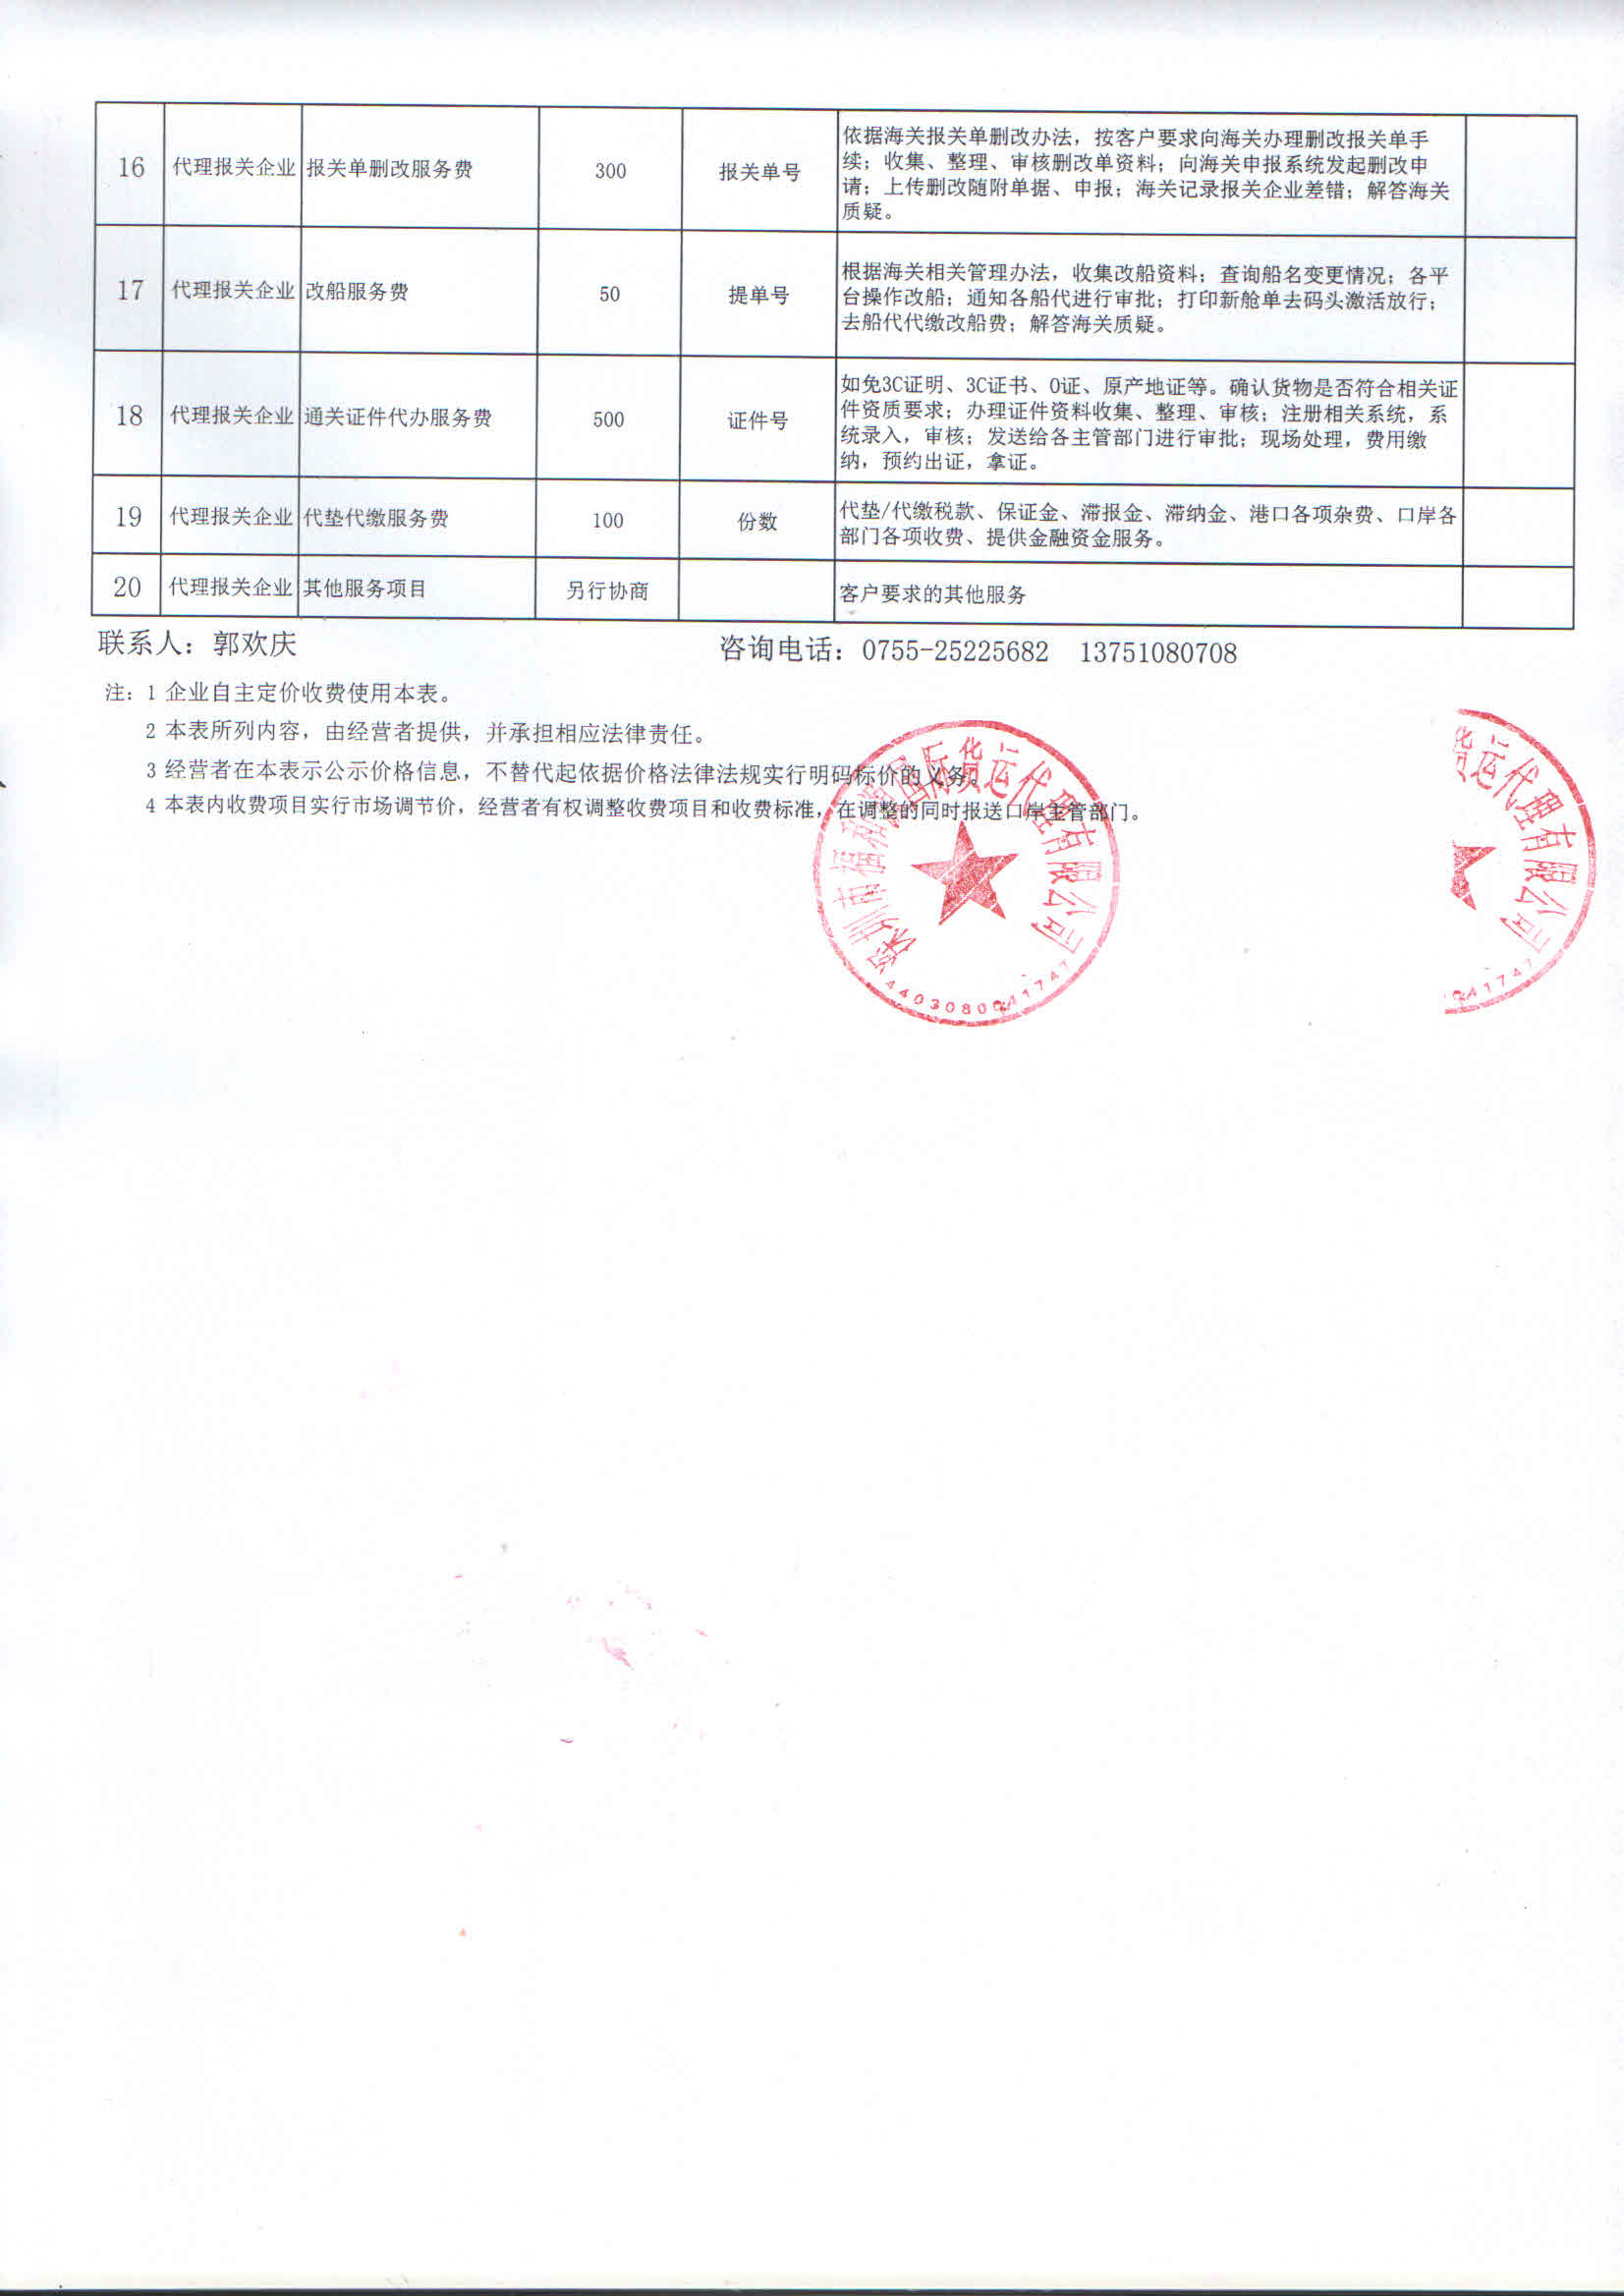 深圳市福和源国际货运代理有限公司2.jpg